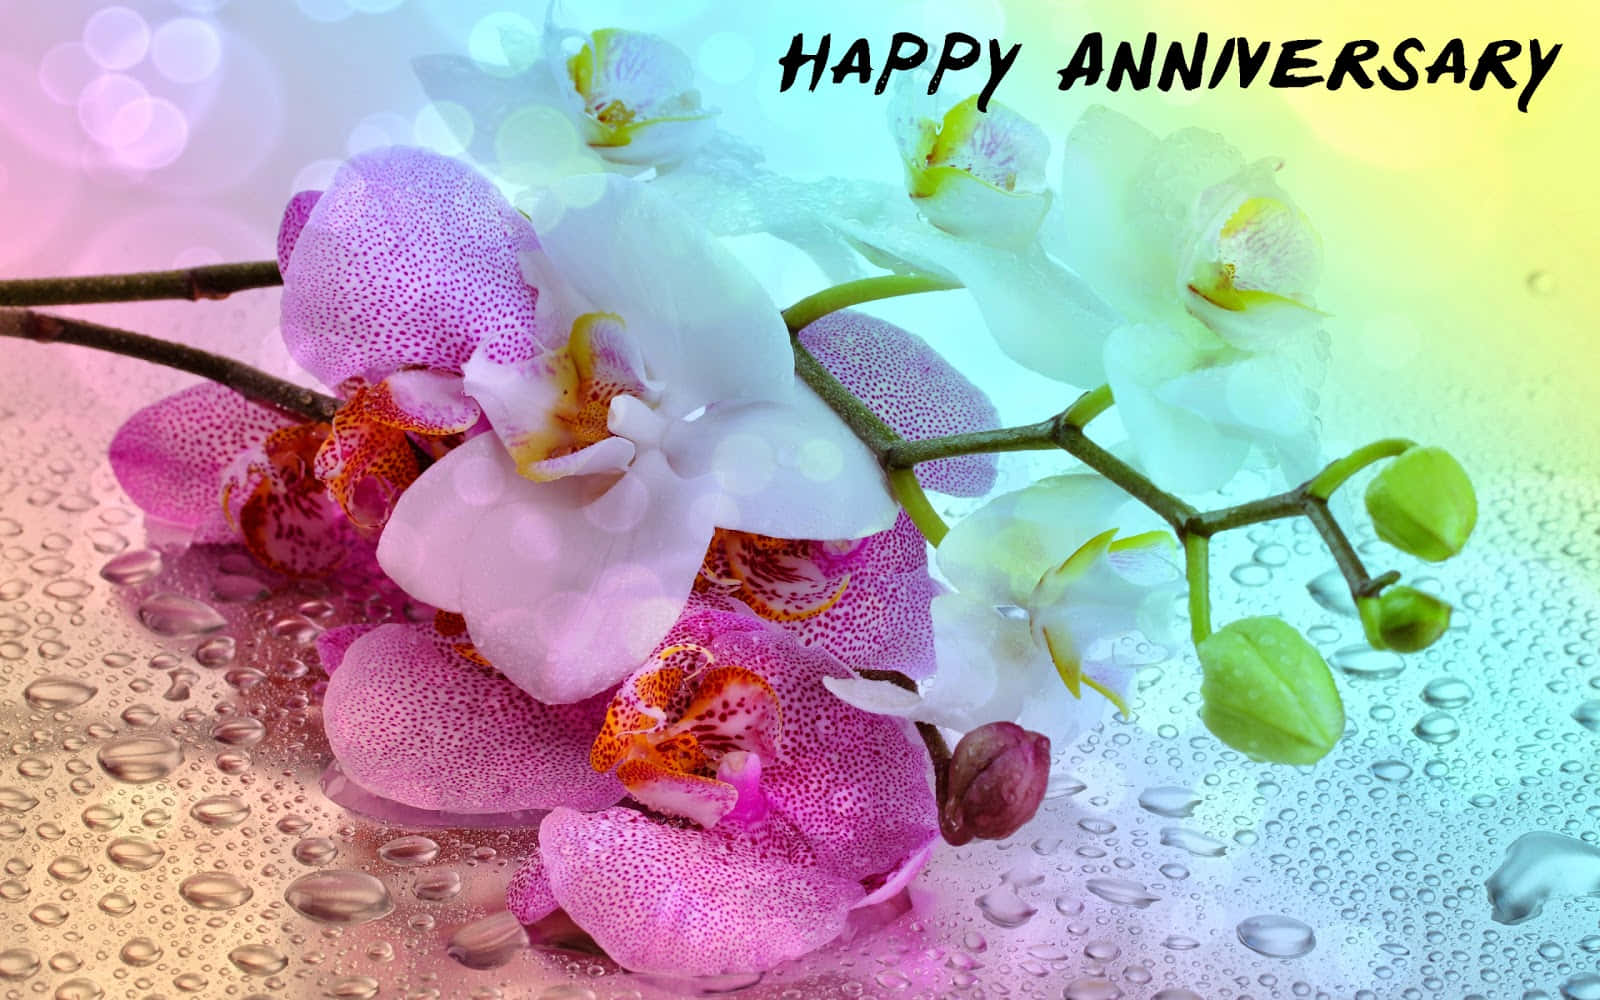 Imagende Flores De Orquídea Para Un Feliz Aniversario.